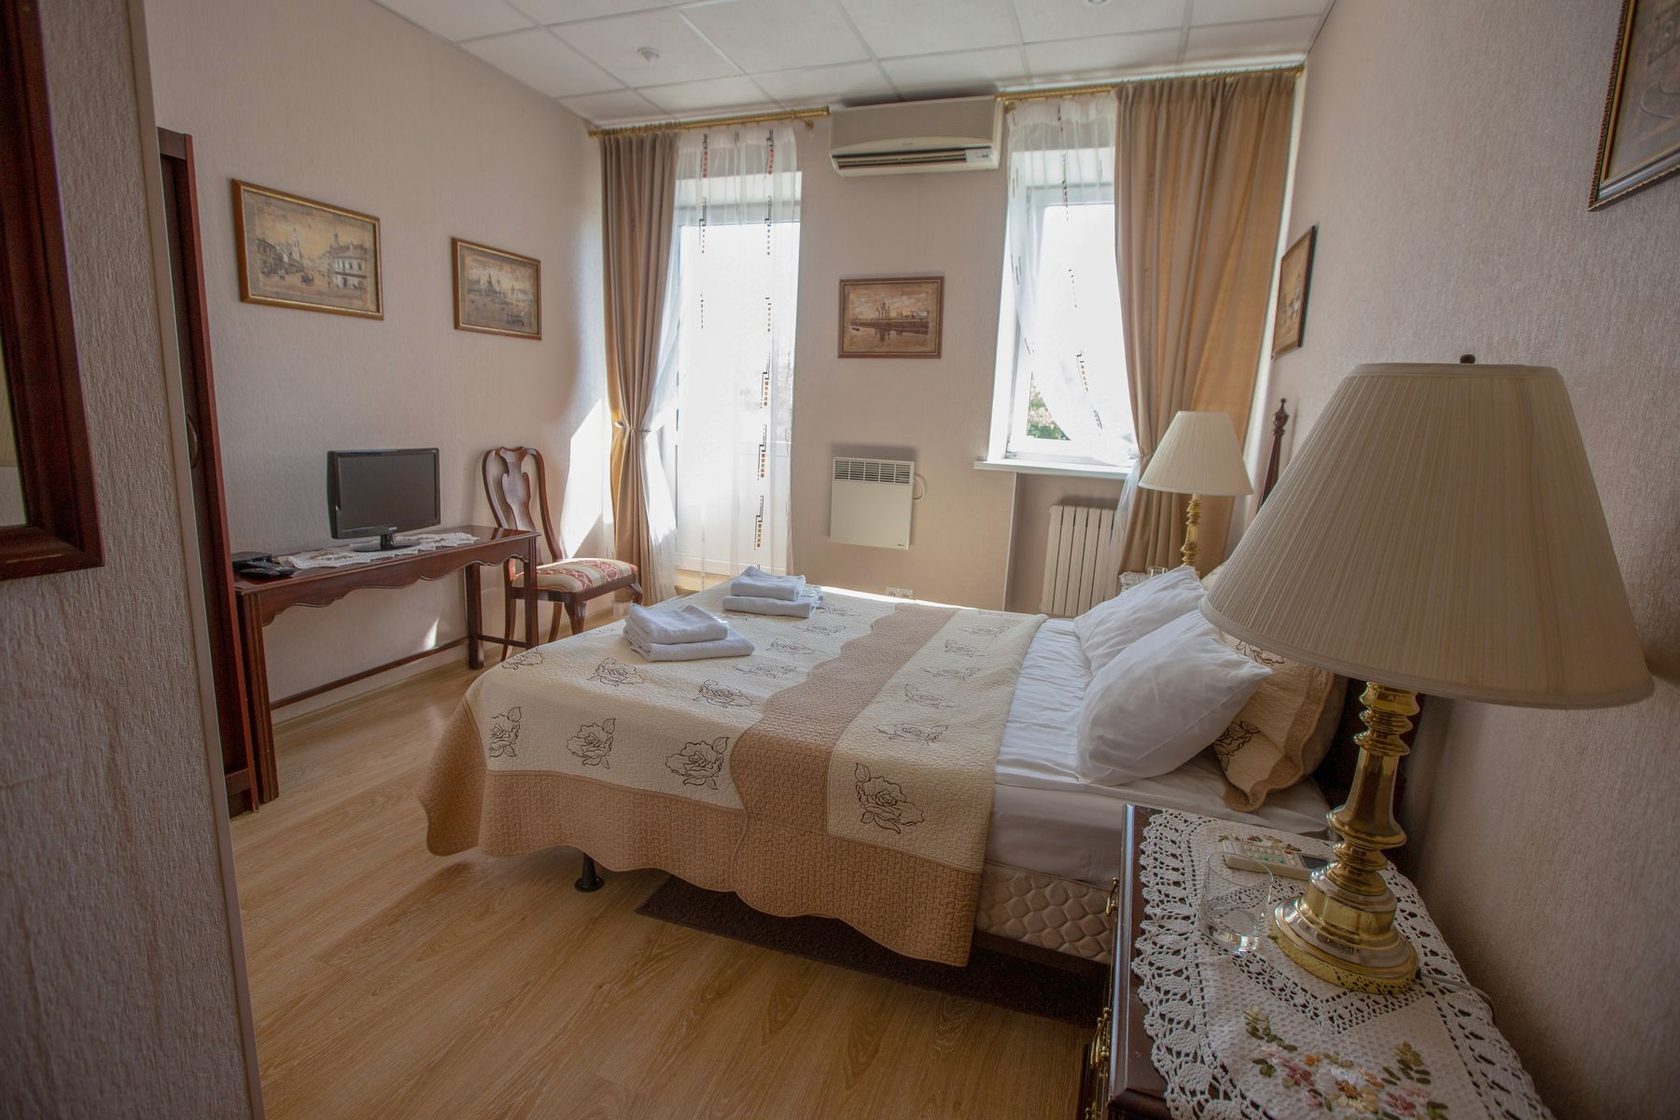 Гостиница в москве недорого для двоих цена